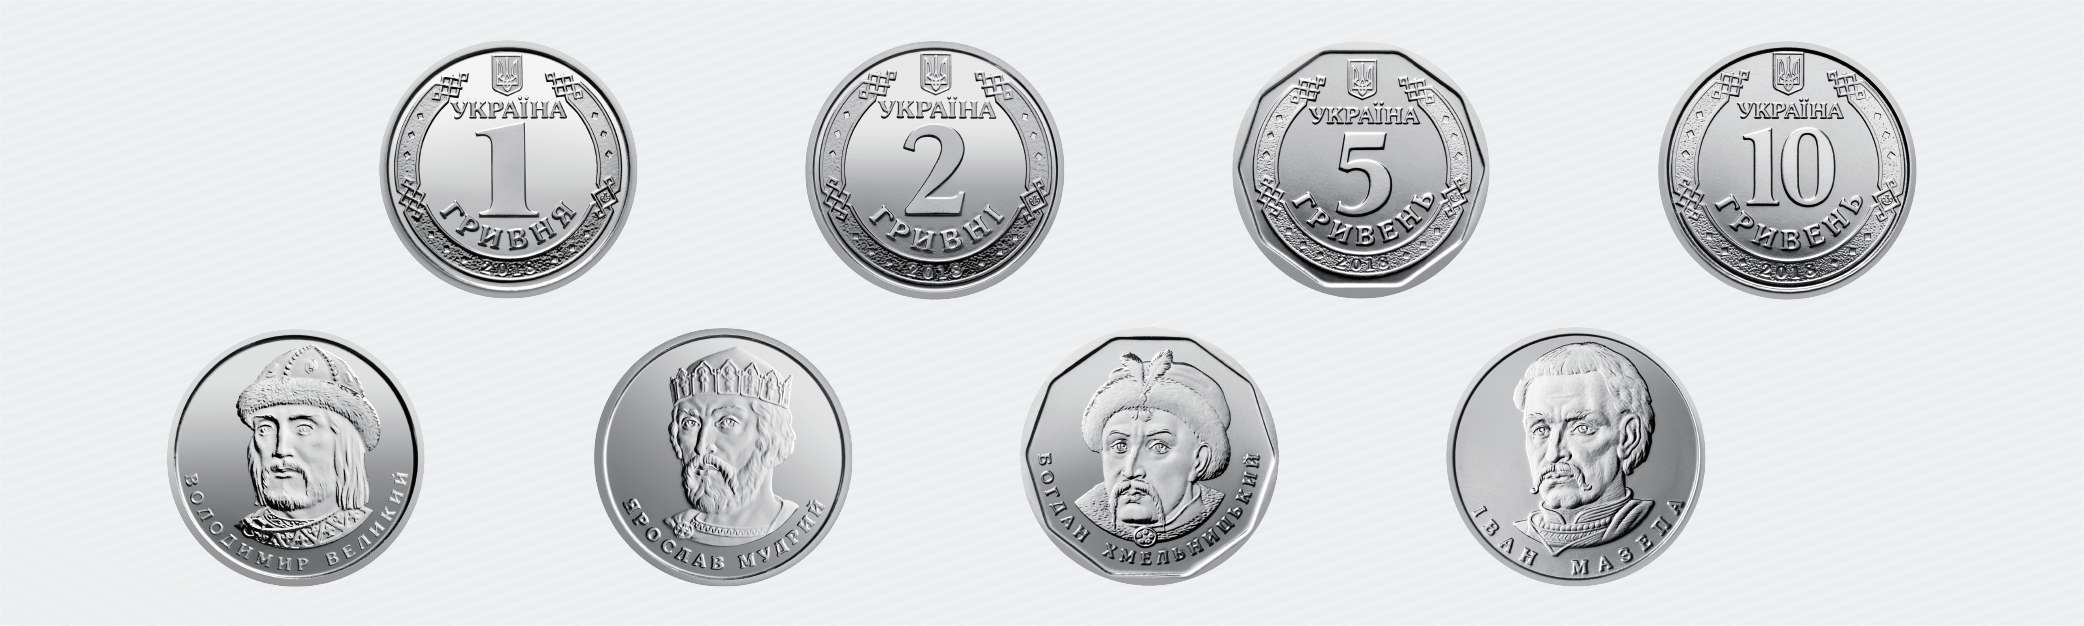 Нацбанк презентовал новые оборотные монеты номиналами 1, 2, 5 и 10 гривен